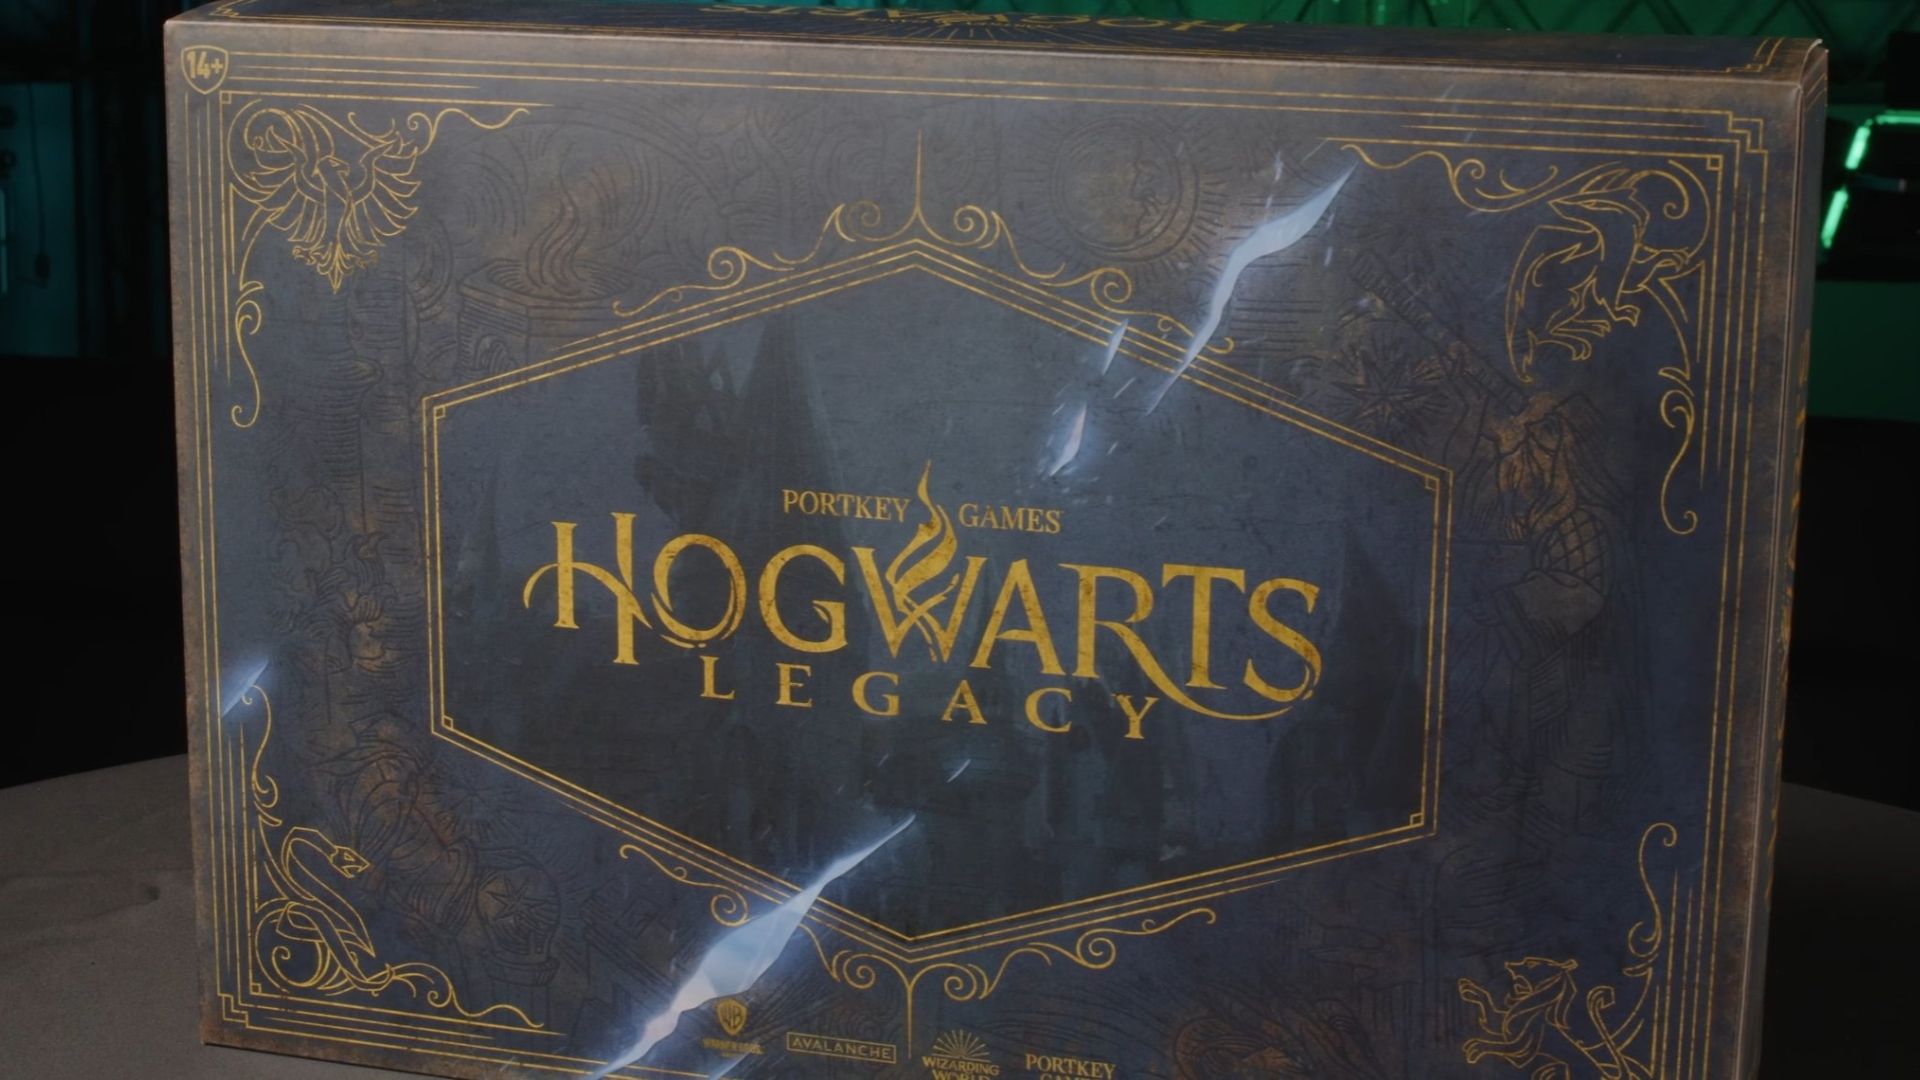 Показали коллекционное издание Hogwarts Legacy - оно выглядит впечатляюще: с сайта NEWXBOXONE.RU